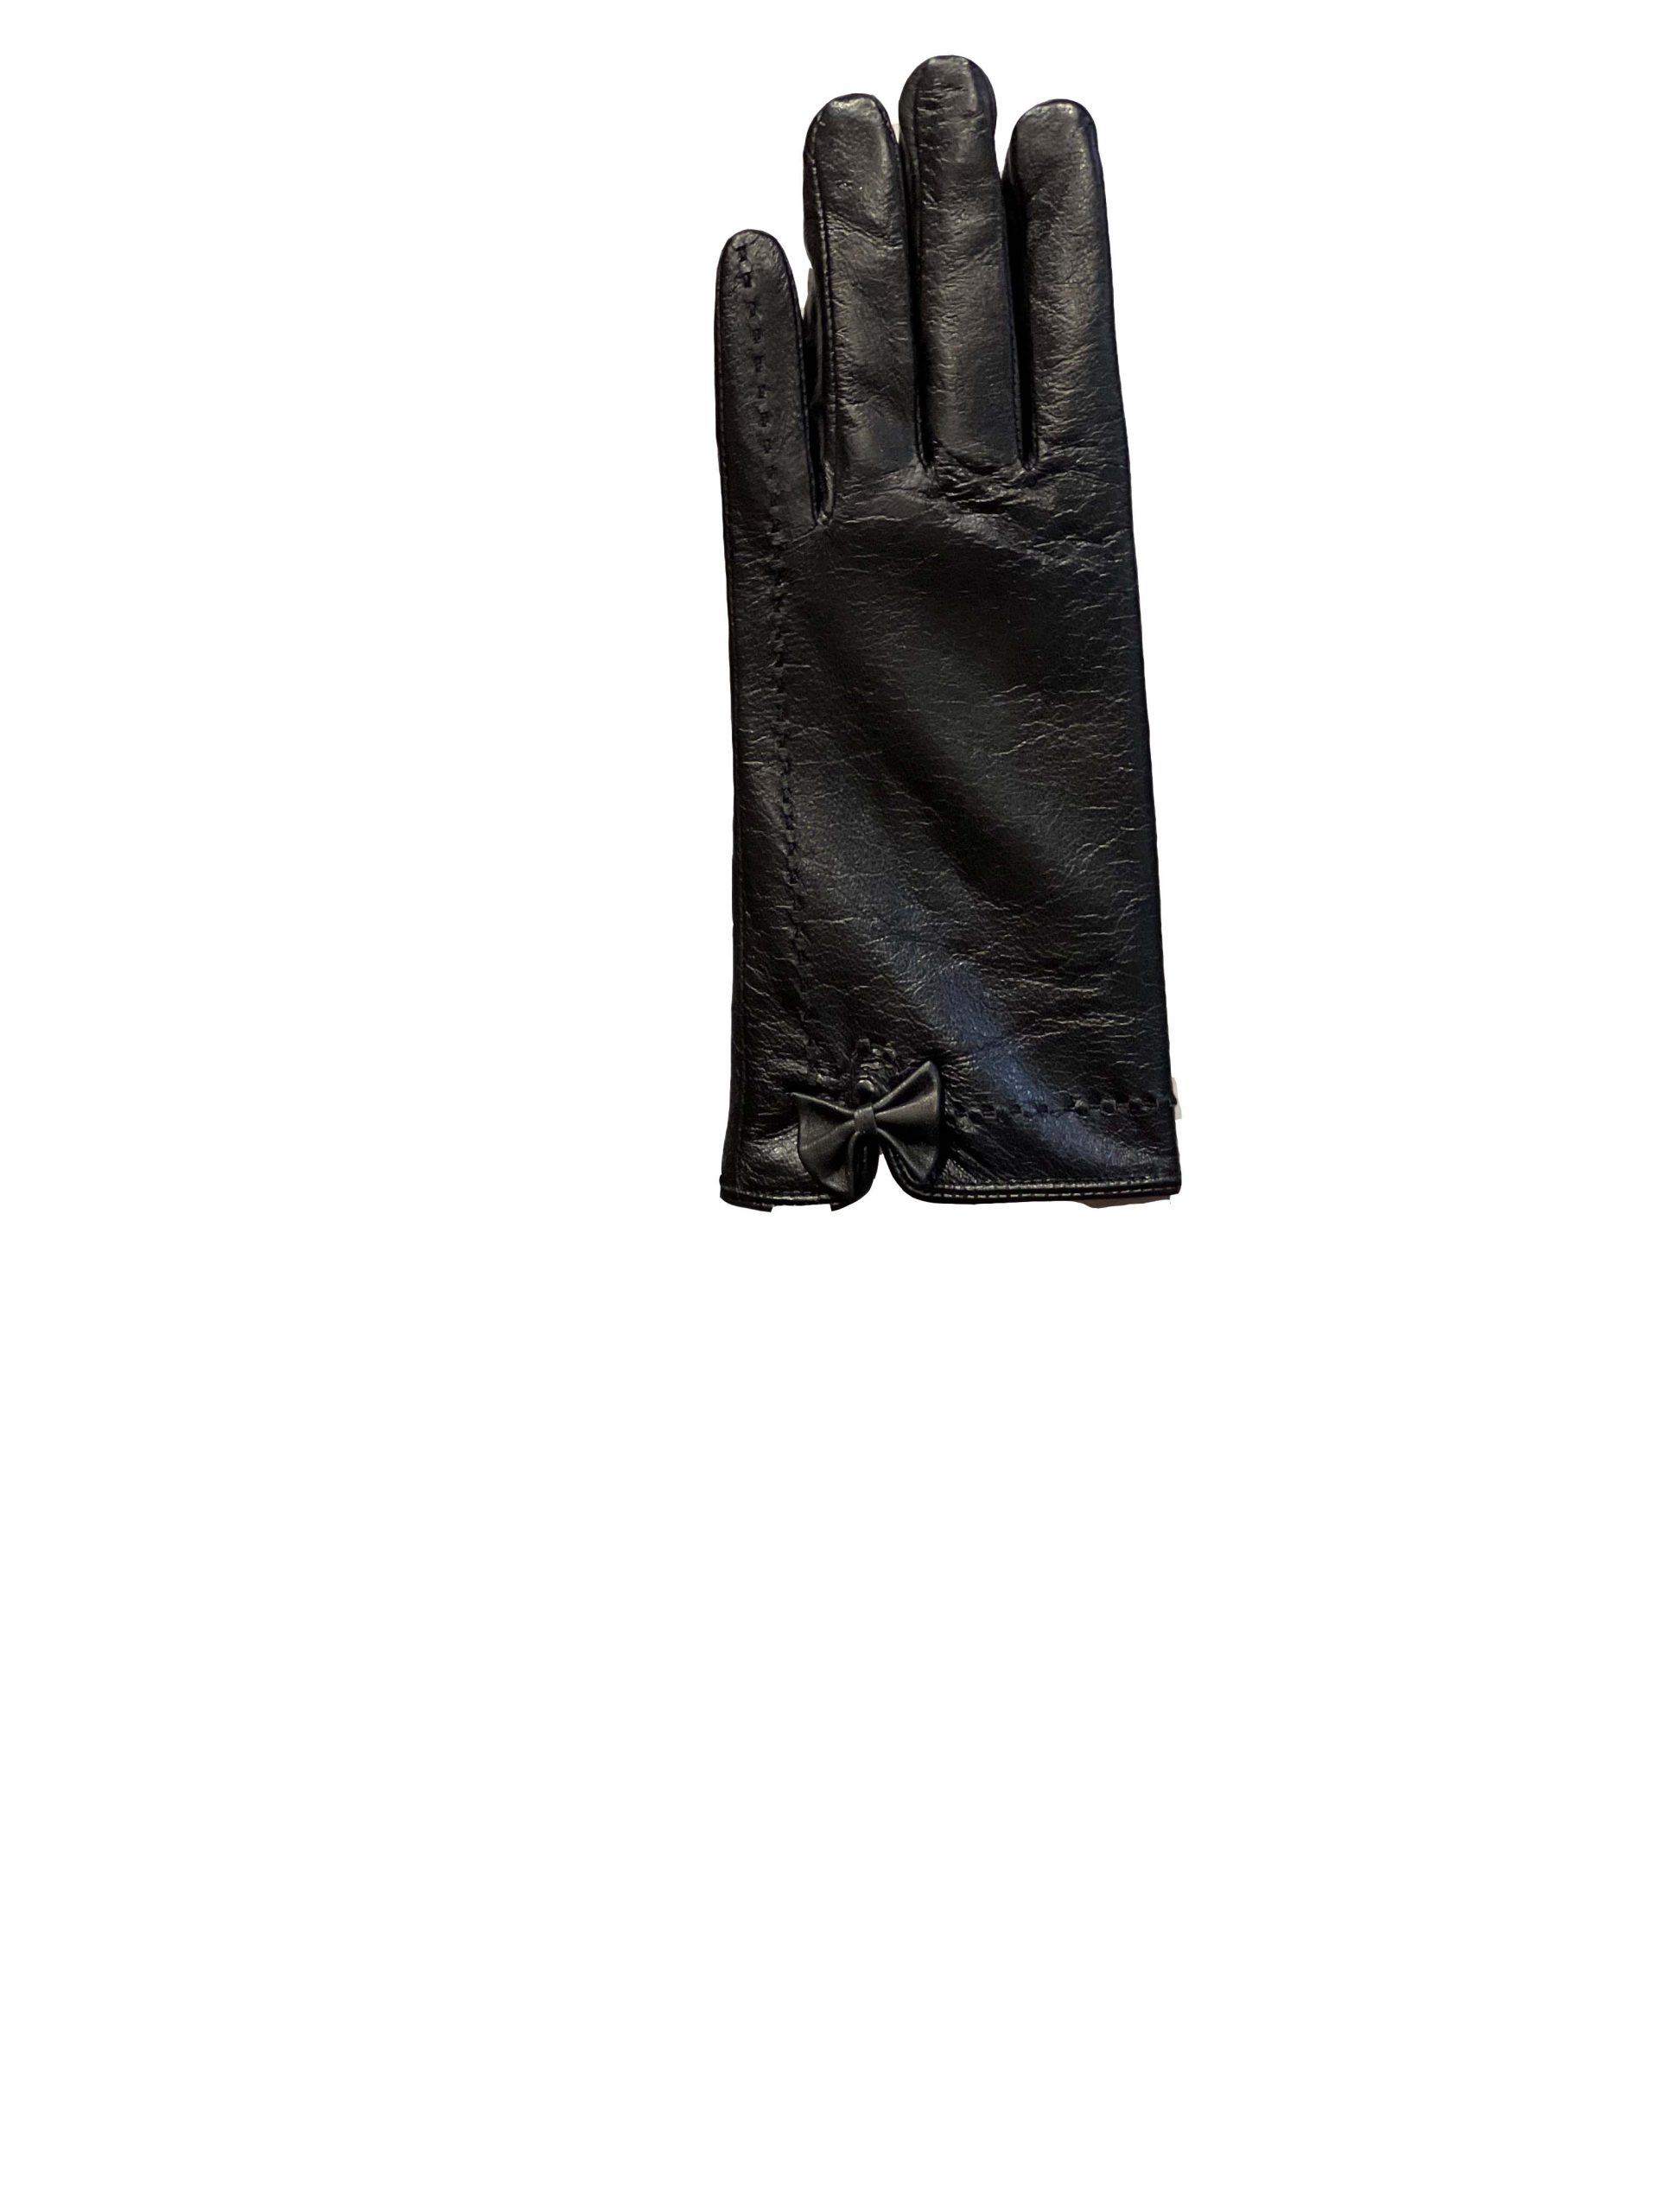 Vergelijkbaar Dinkarville plak Leren dames handschoenen zwart-cometa – BK Leder